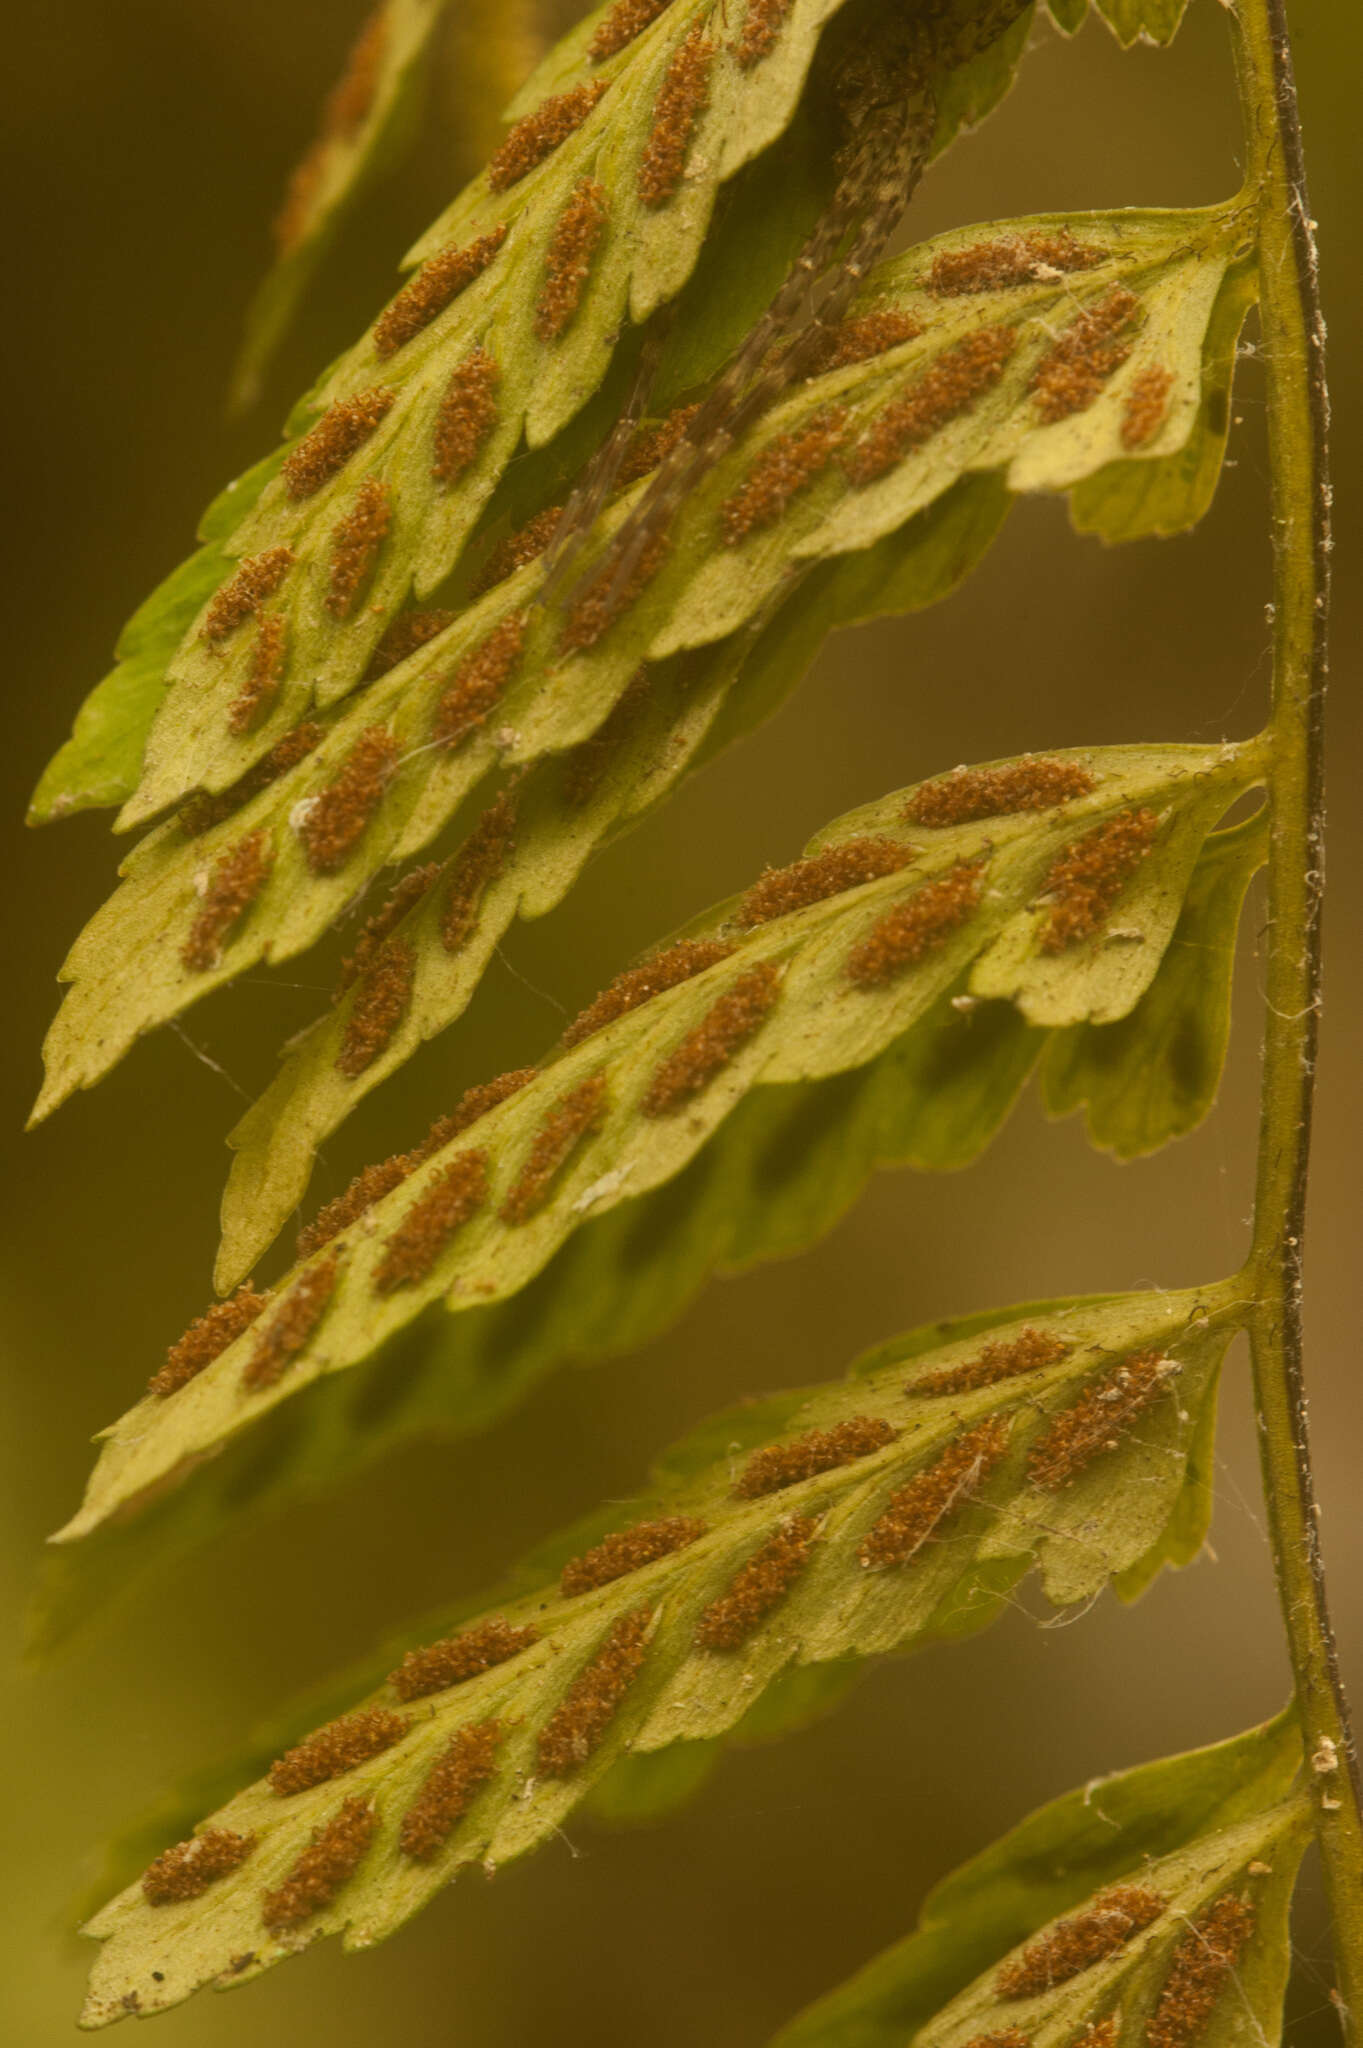 Image of eared spleenwort